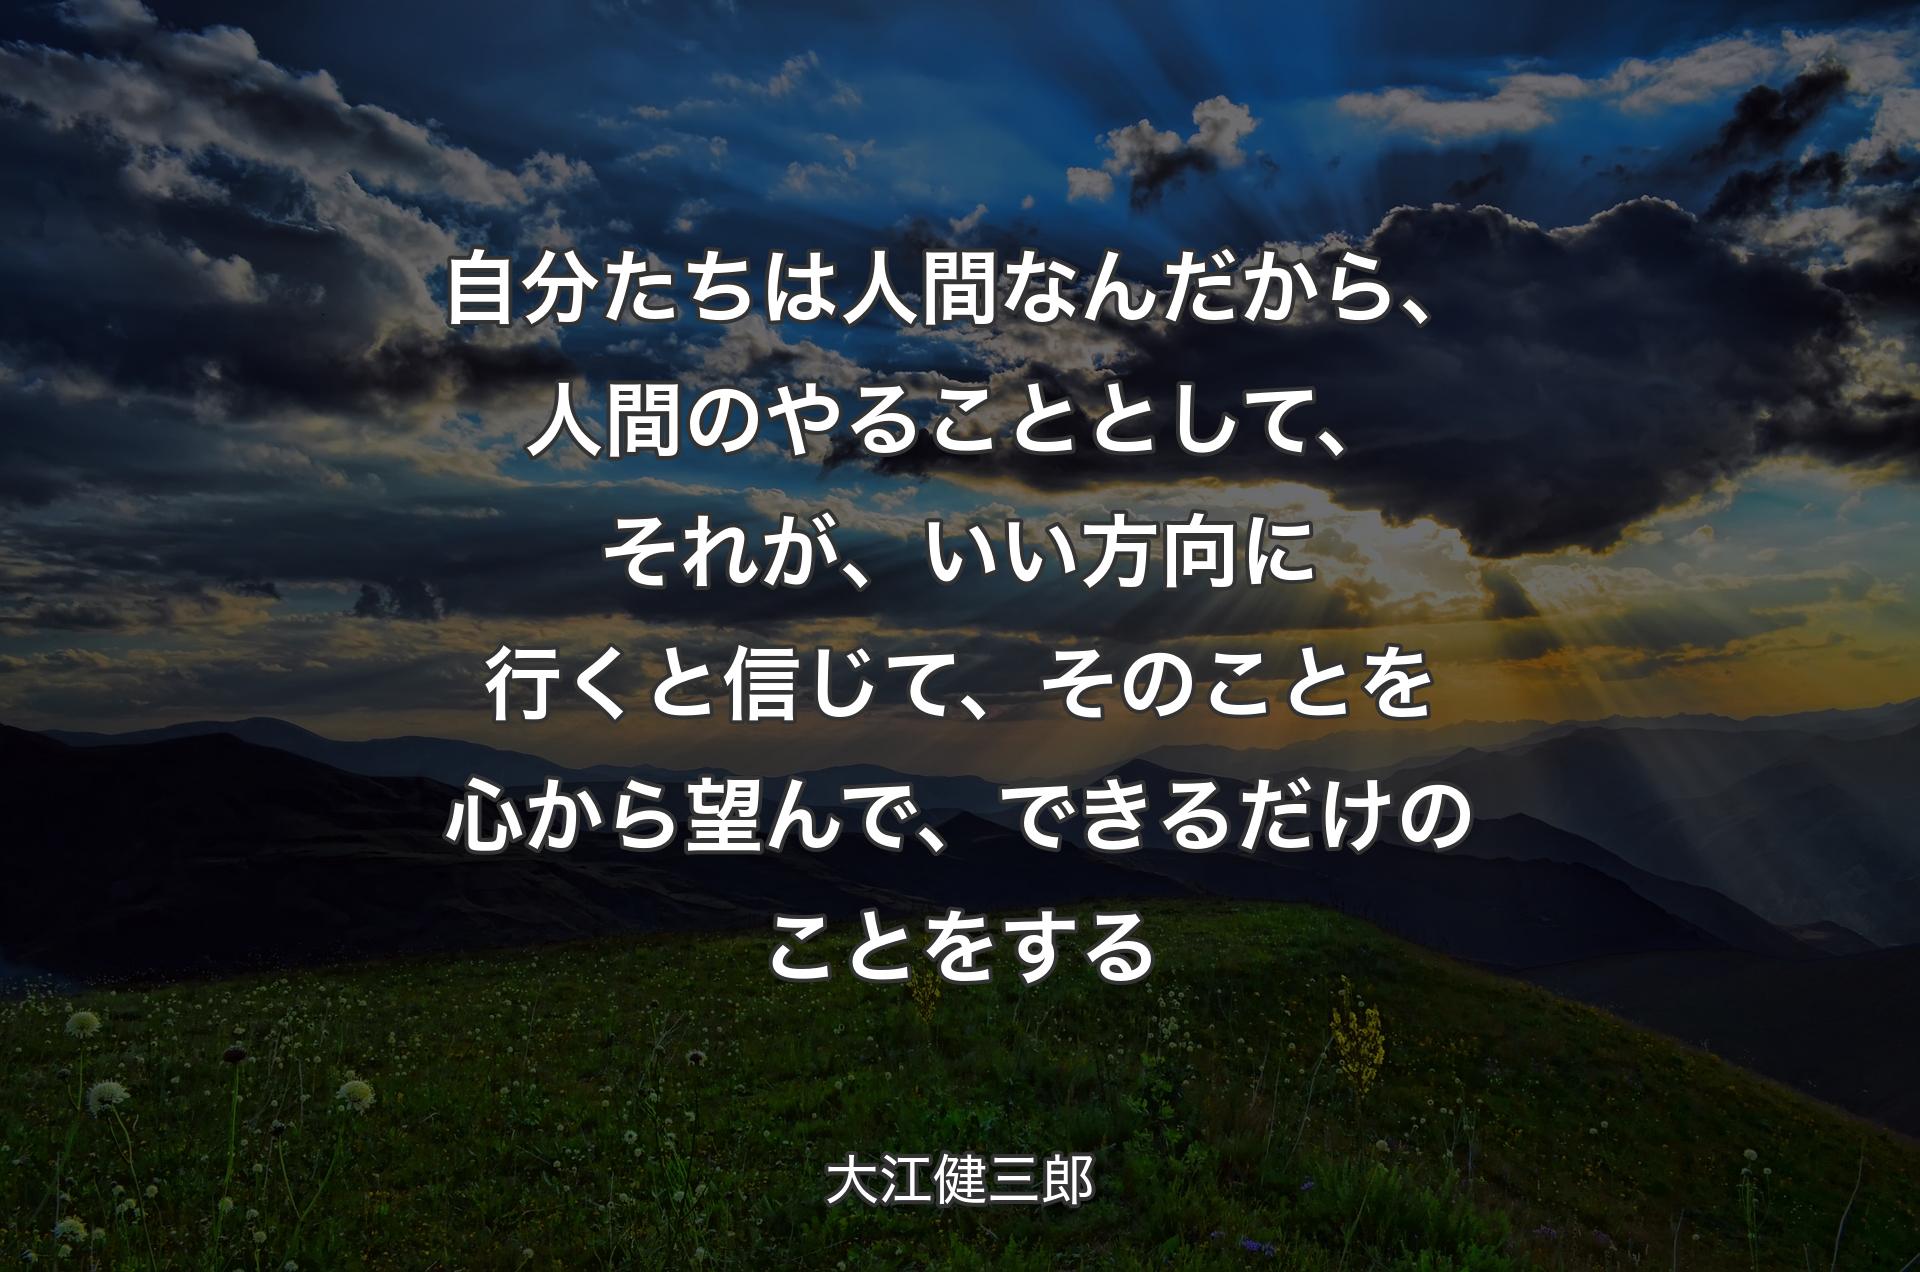 自分たちは人間なんだから、人間のやることとして、それが、いい方向に行くと信じて、そのことを心から望んで、できるだけのことをする - 大江健三郎